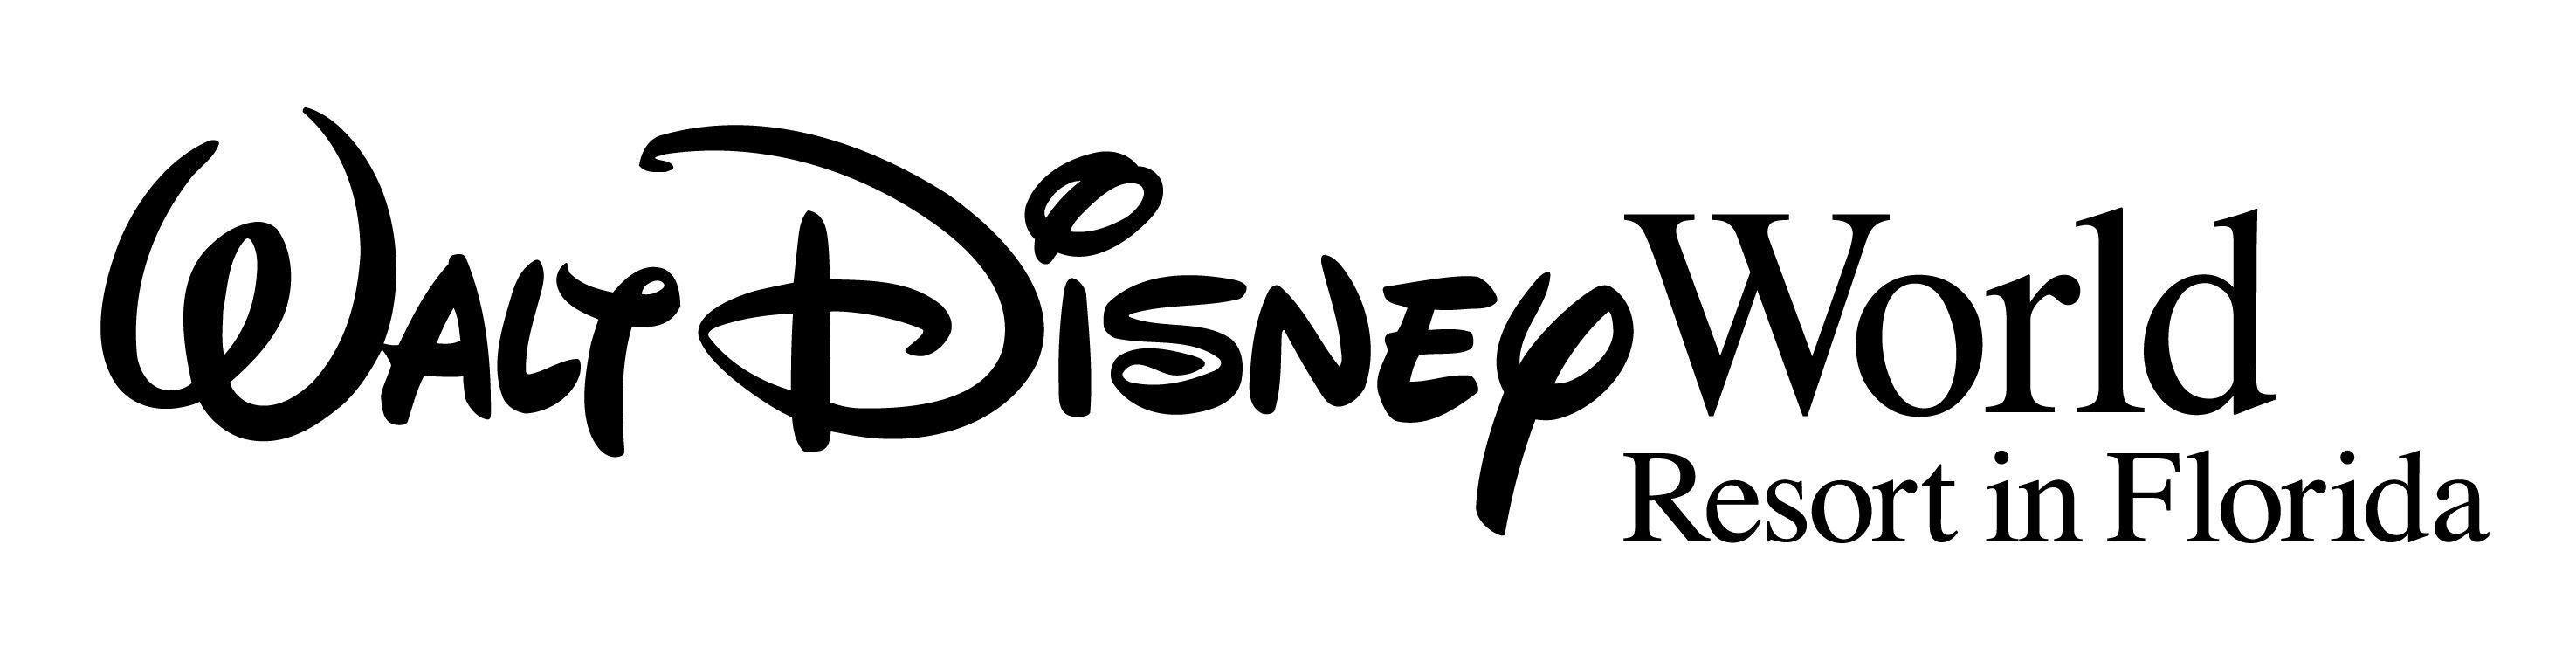 Walt Disney World Logo - Walt disney world Logos